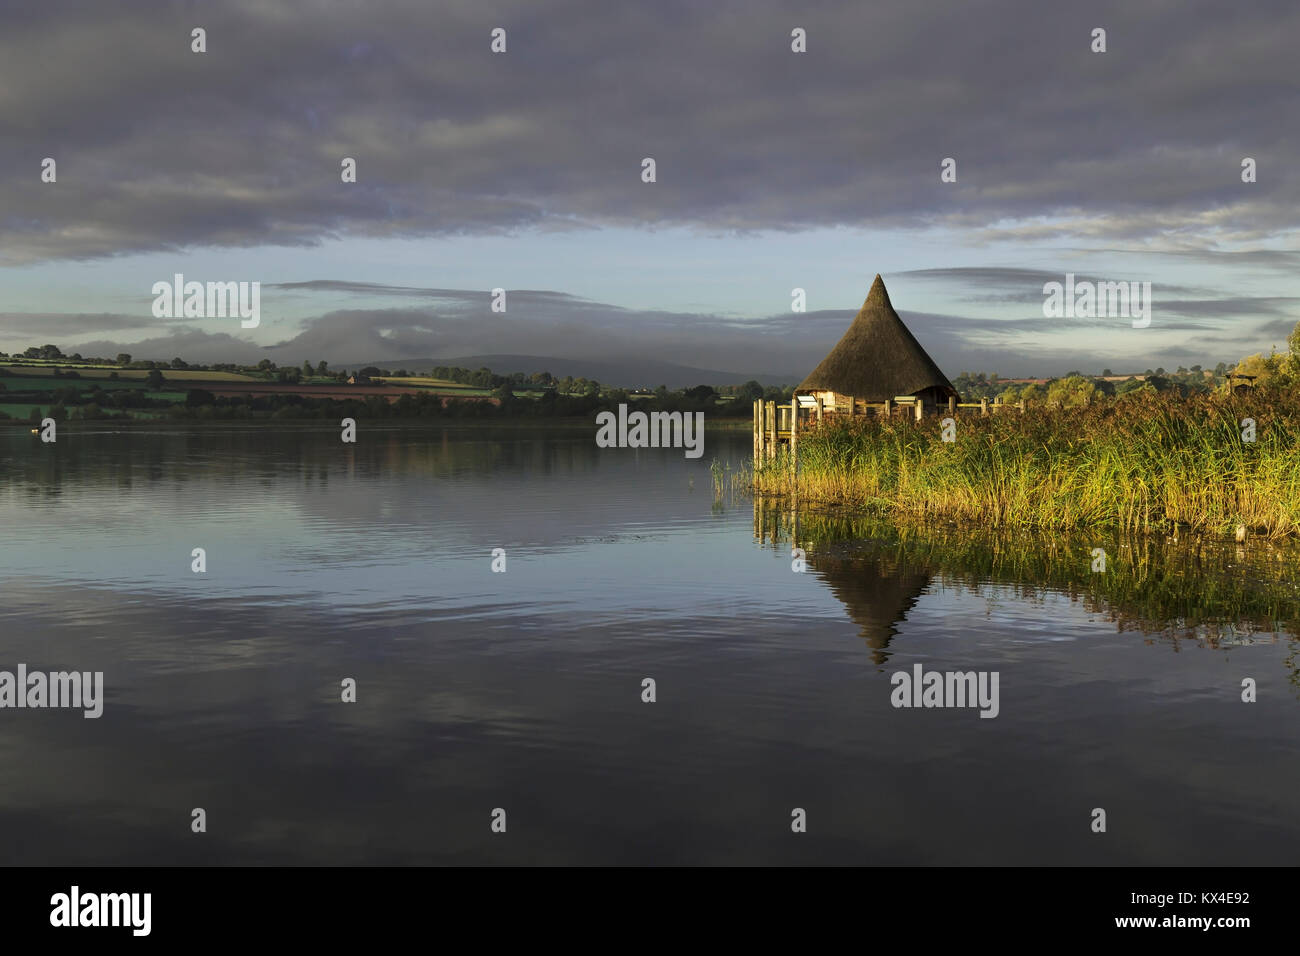 Una imagen del lago Llangorse Centro de información capturada por el sol de primera hora de la mañana, rodada en Gales, Reino Unido Foto de stock